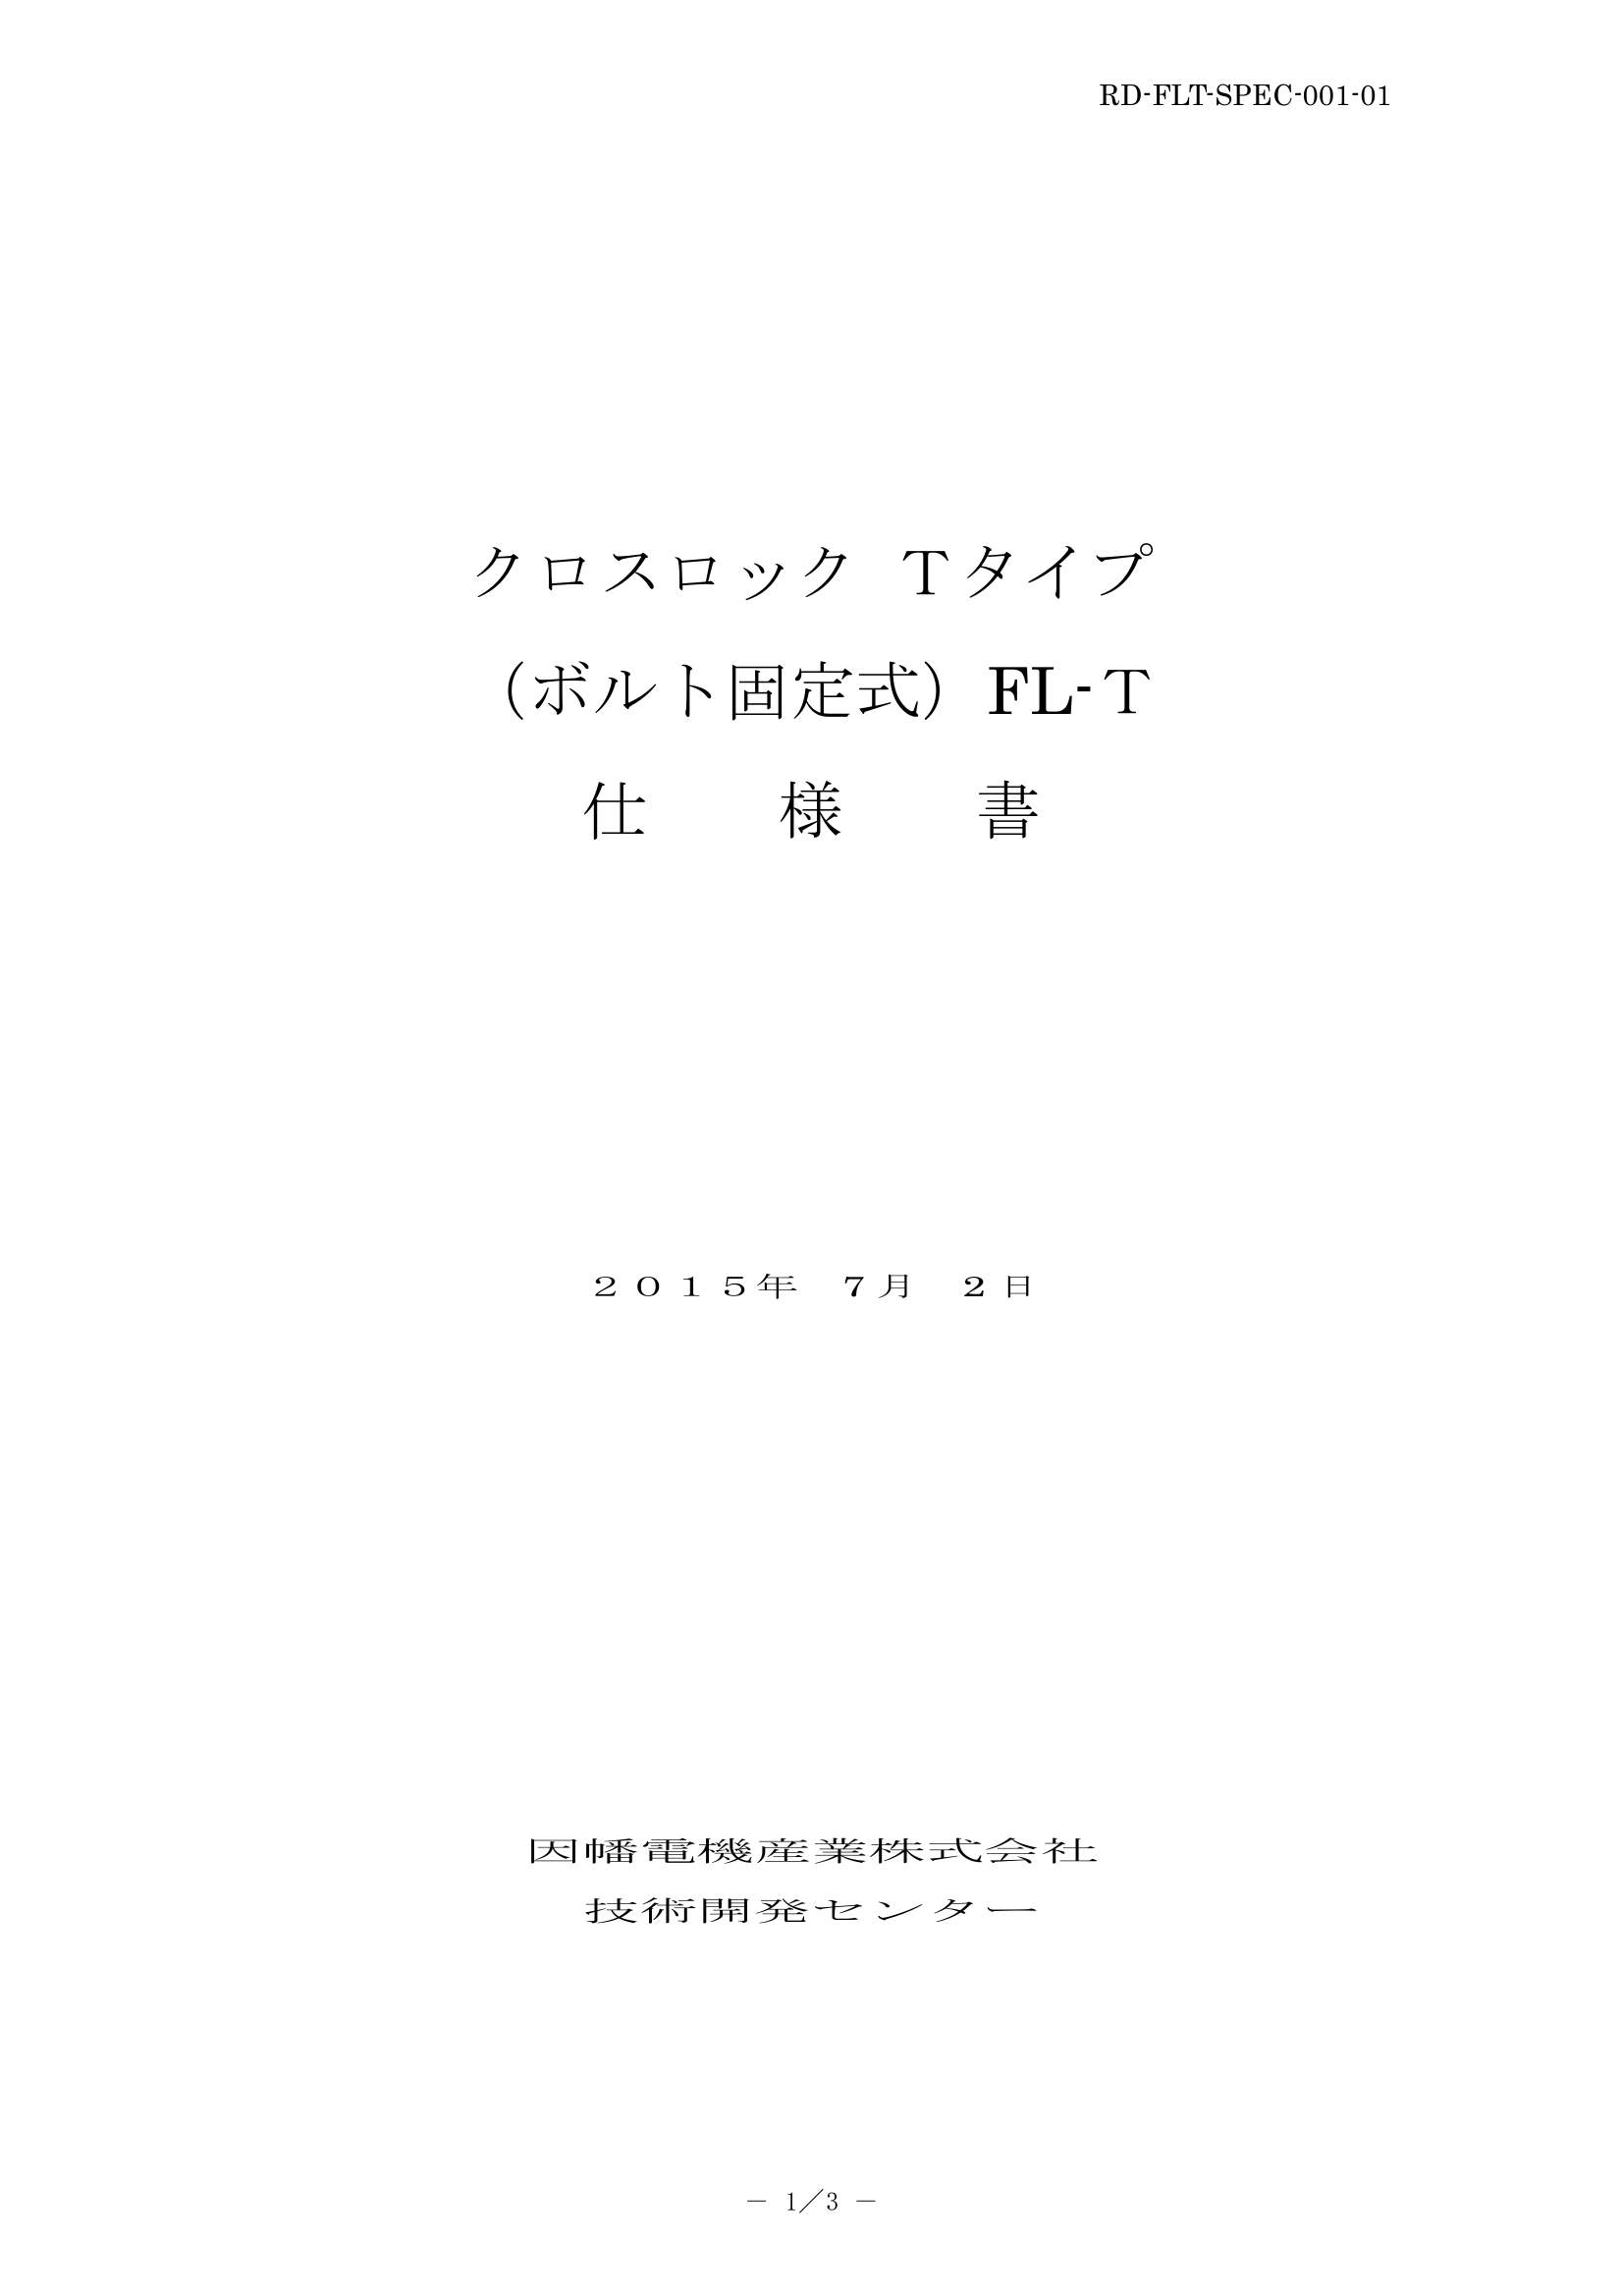 FL-T_仕様書_20150702.pdf